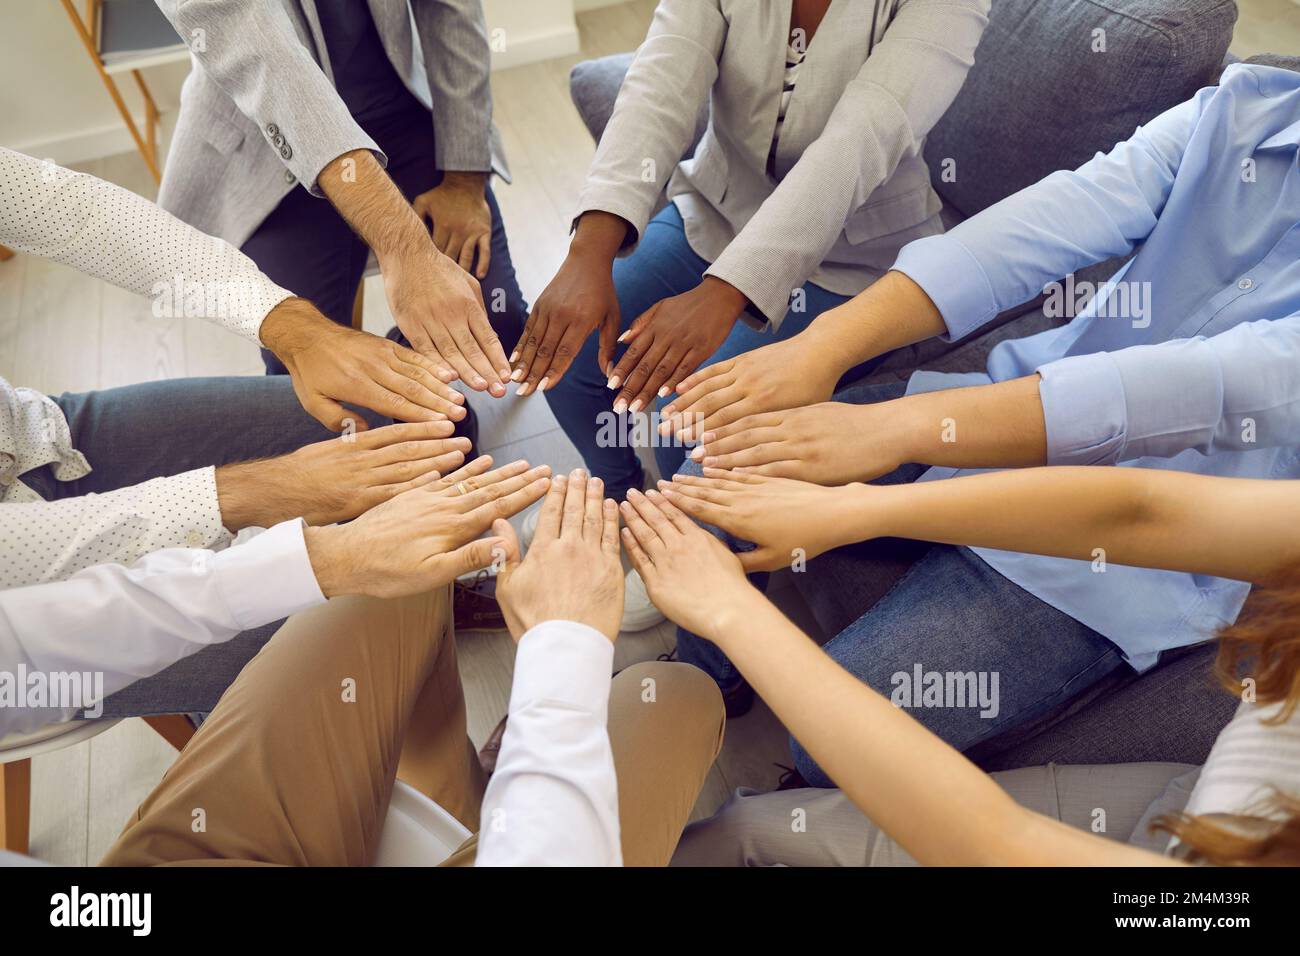 Verschiedene multirassische Männer und Frauen bilden einen Kreis, in dem ihre Hände ihre Einheit und Gleichheit zeigen. Stockfoto